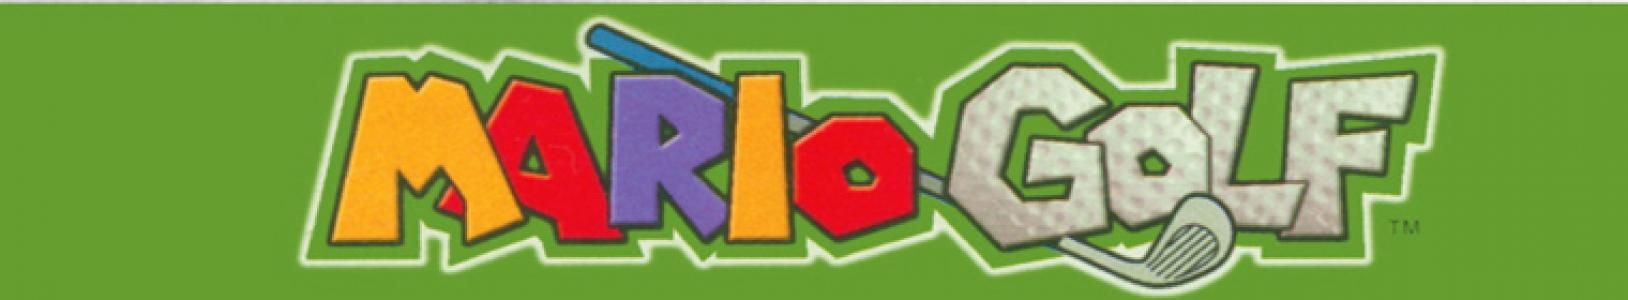 Mario Golf banner